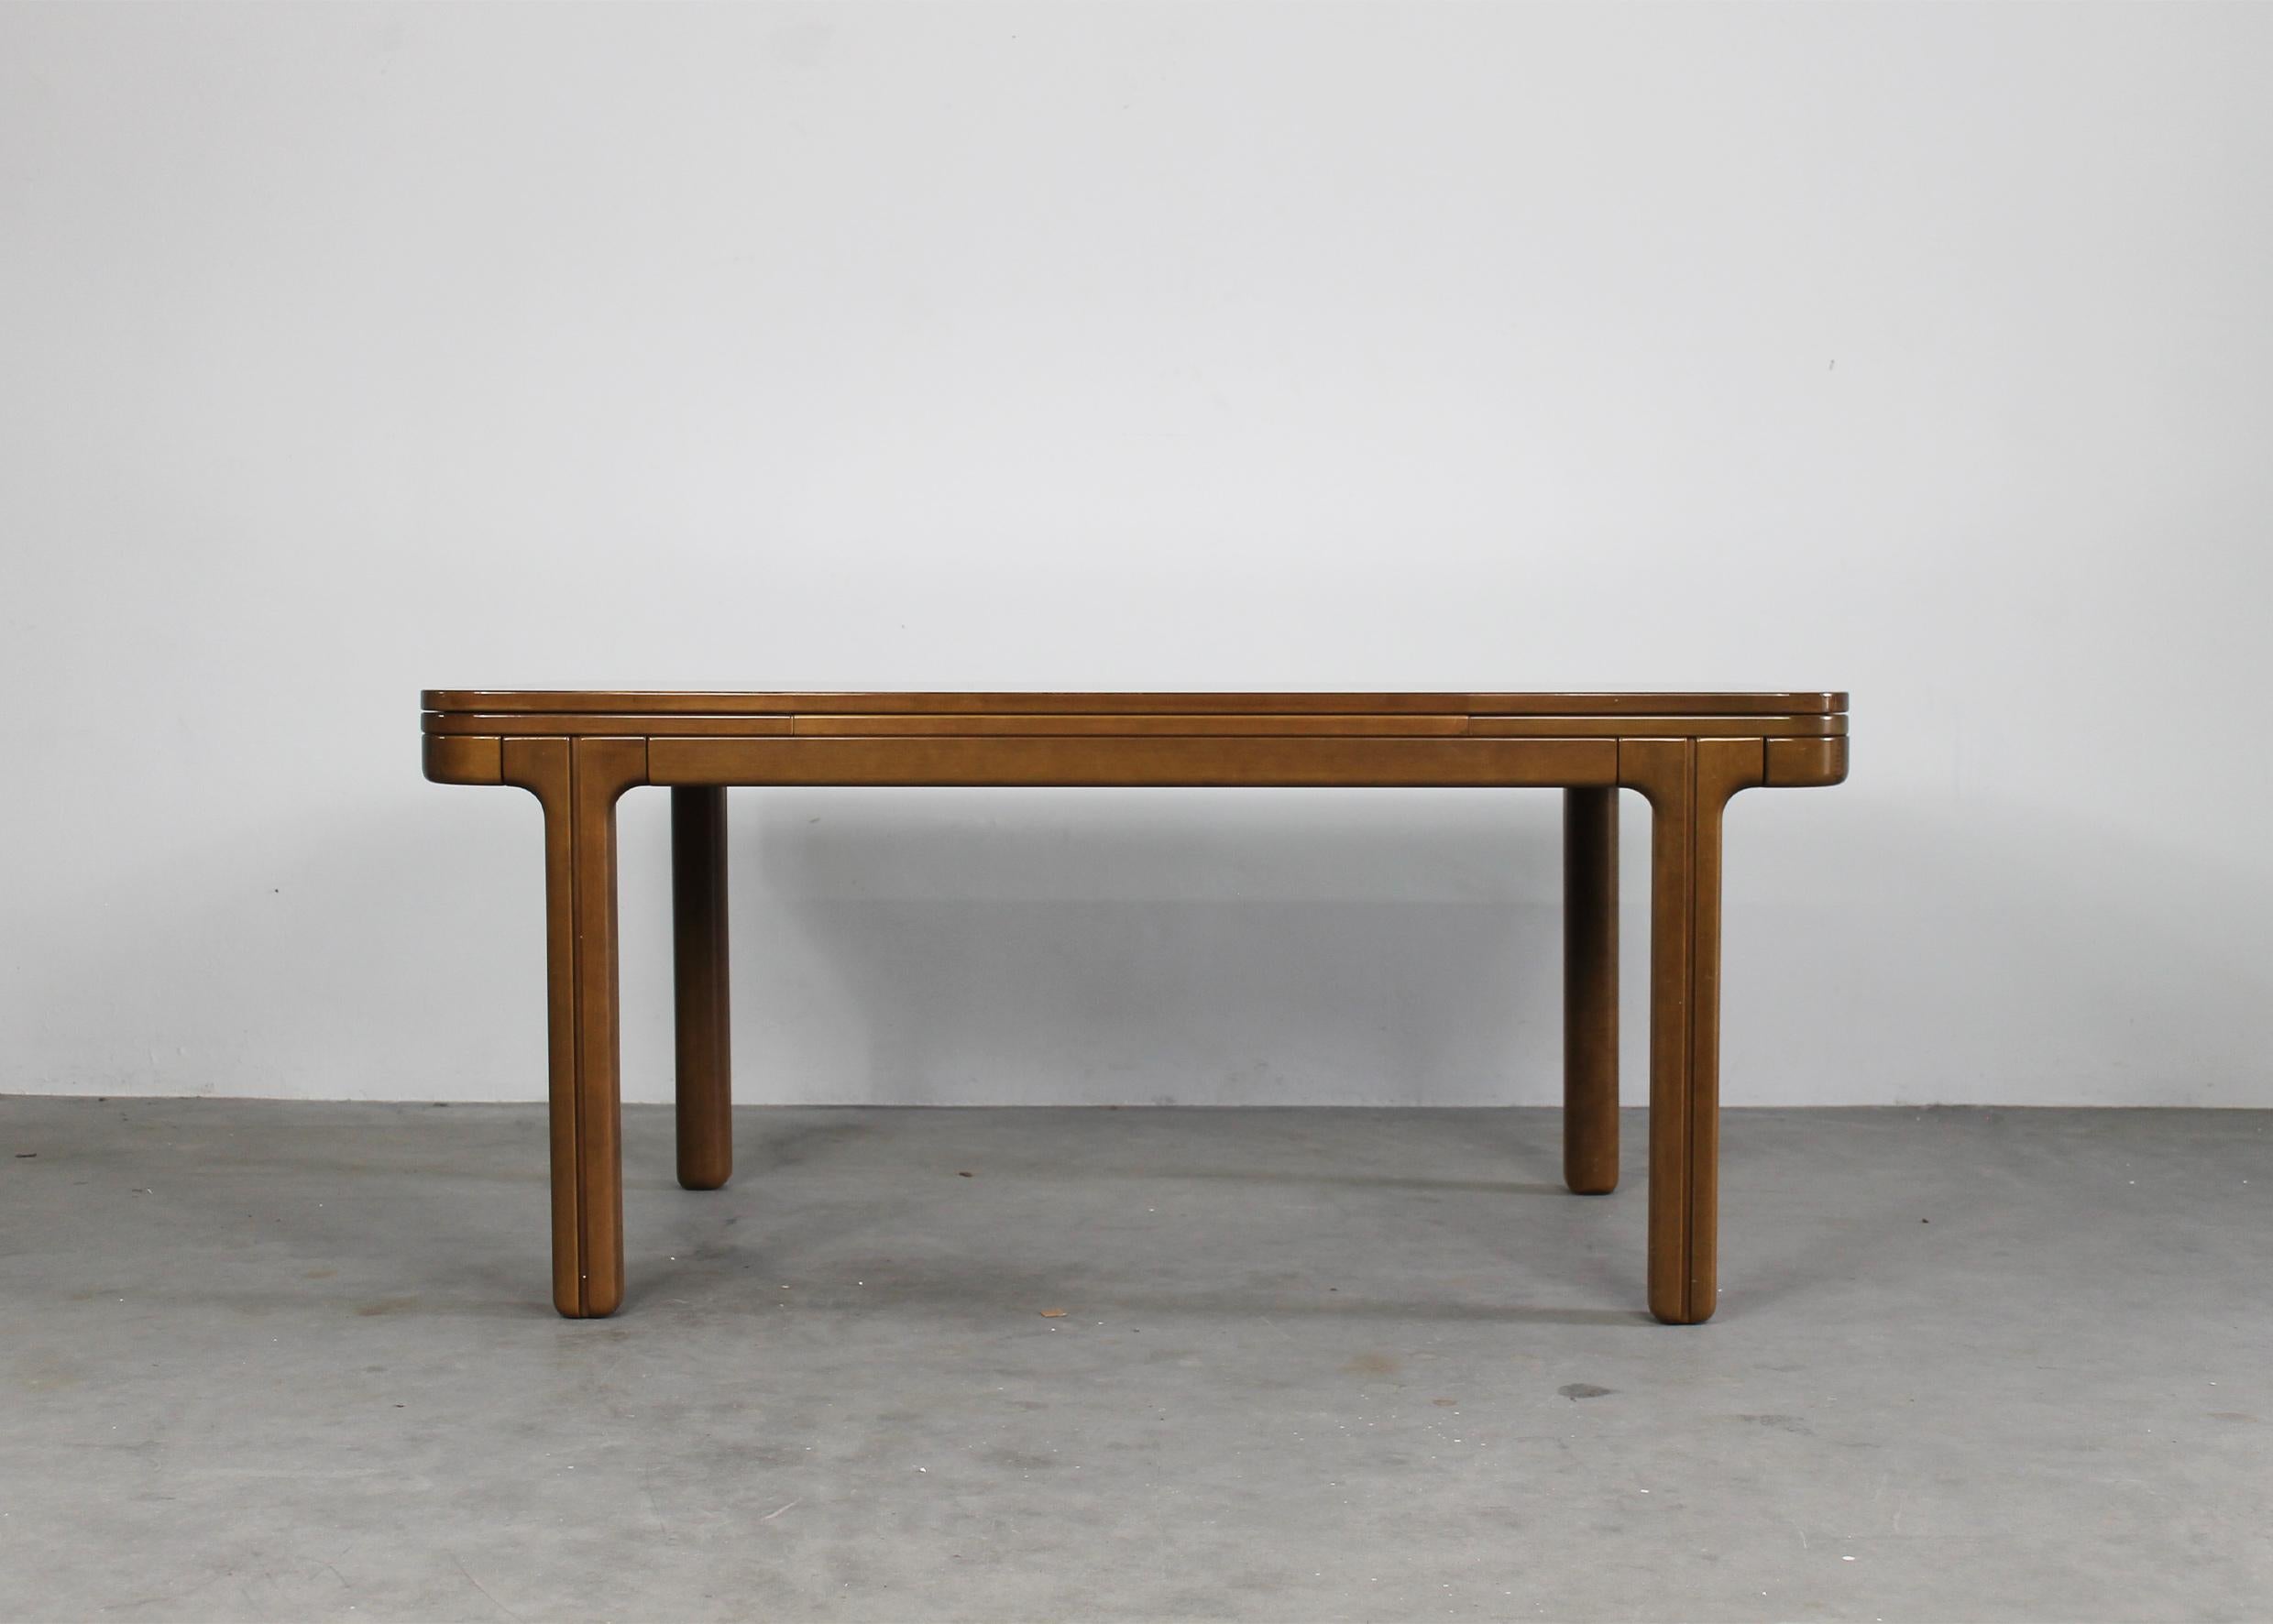 Ausziehbarer Esstisch aus Holz, entworfen von Ilmari Tapiovaara in den 1970er Jahren. 

Dieser seltene Tisch hat eine rechteckige Platte mit elegant abgerundeten Kanten. Die Tischplatte wird mit einem Verriegelungssystem an der Basis befestigt. Die